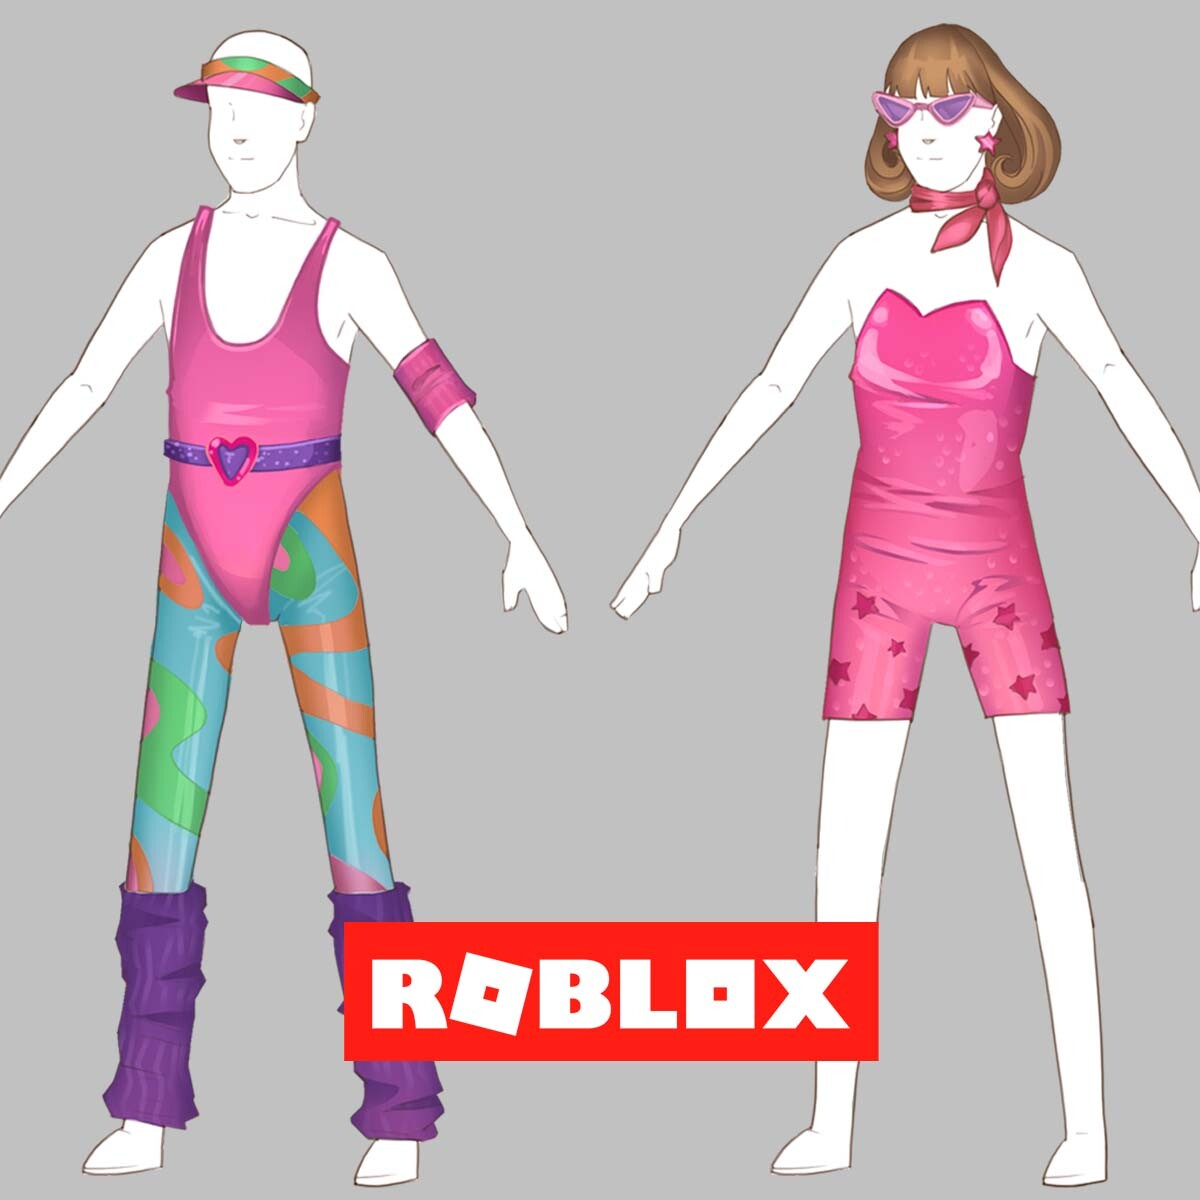 ArtStation - Roblox skin in my style